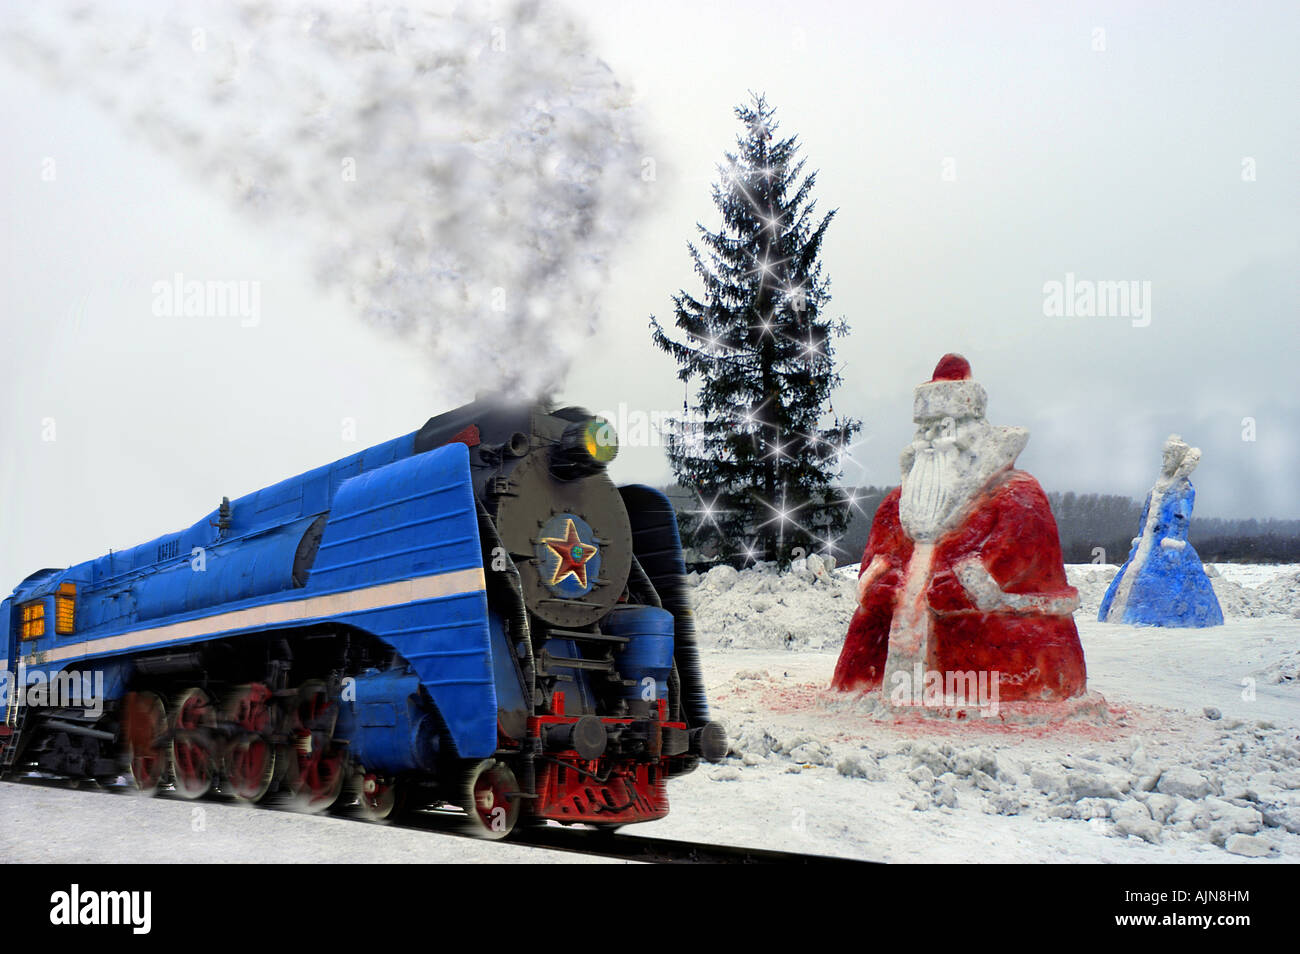 Une scène de Noël en Russie. Une vieille loco vapeur soviétique passe deux figures de glace de fête avec de grands pins allumé en arrière-plan Banque D'Images